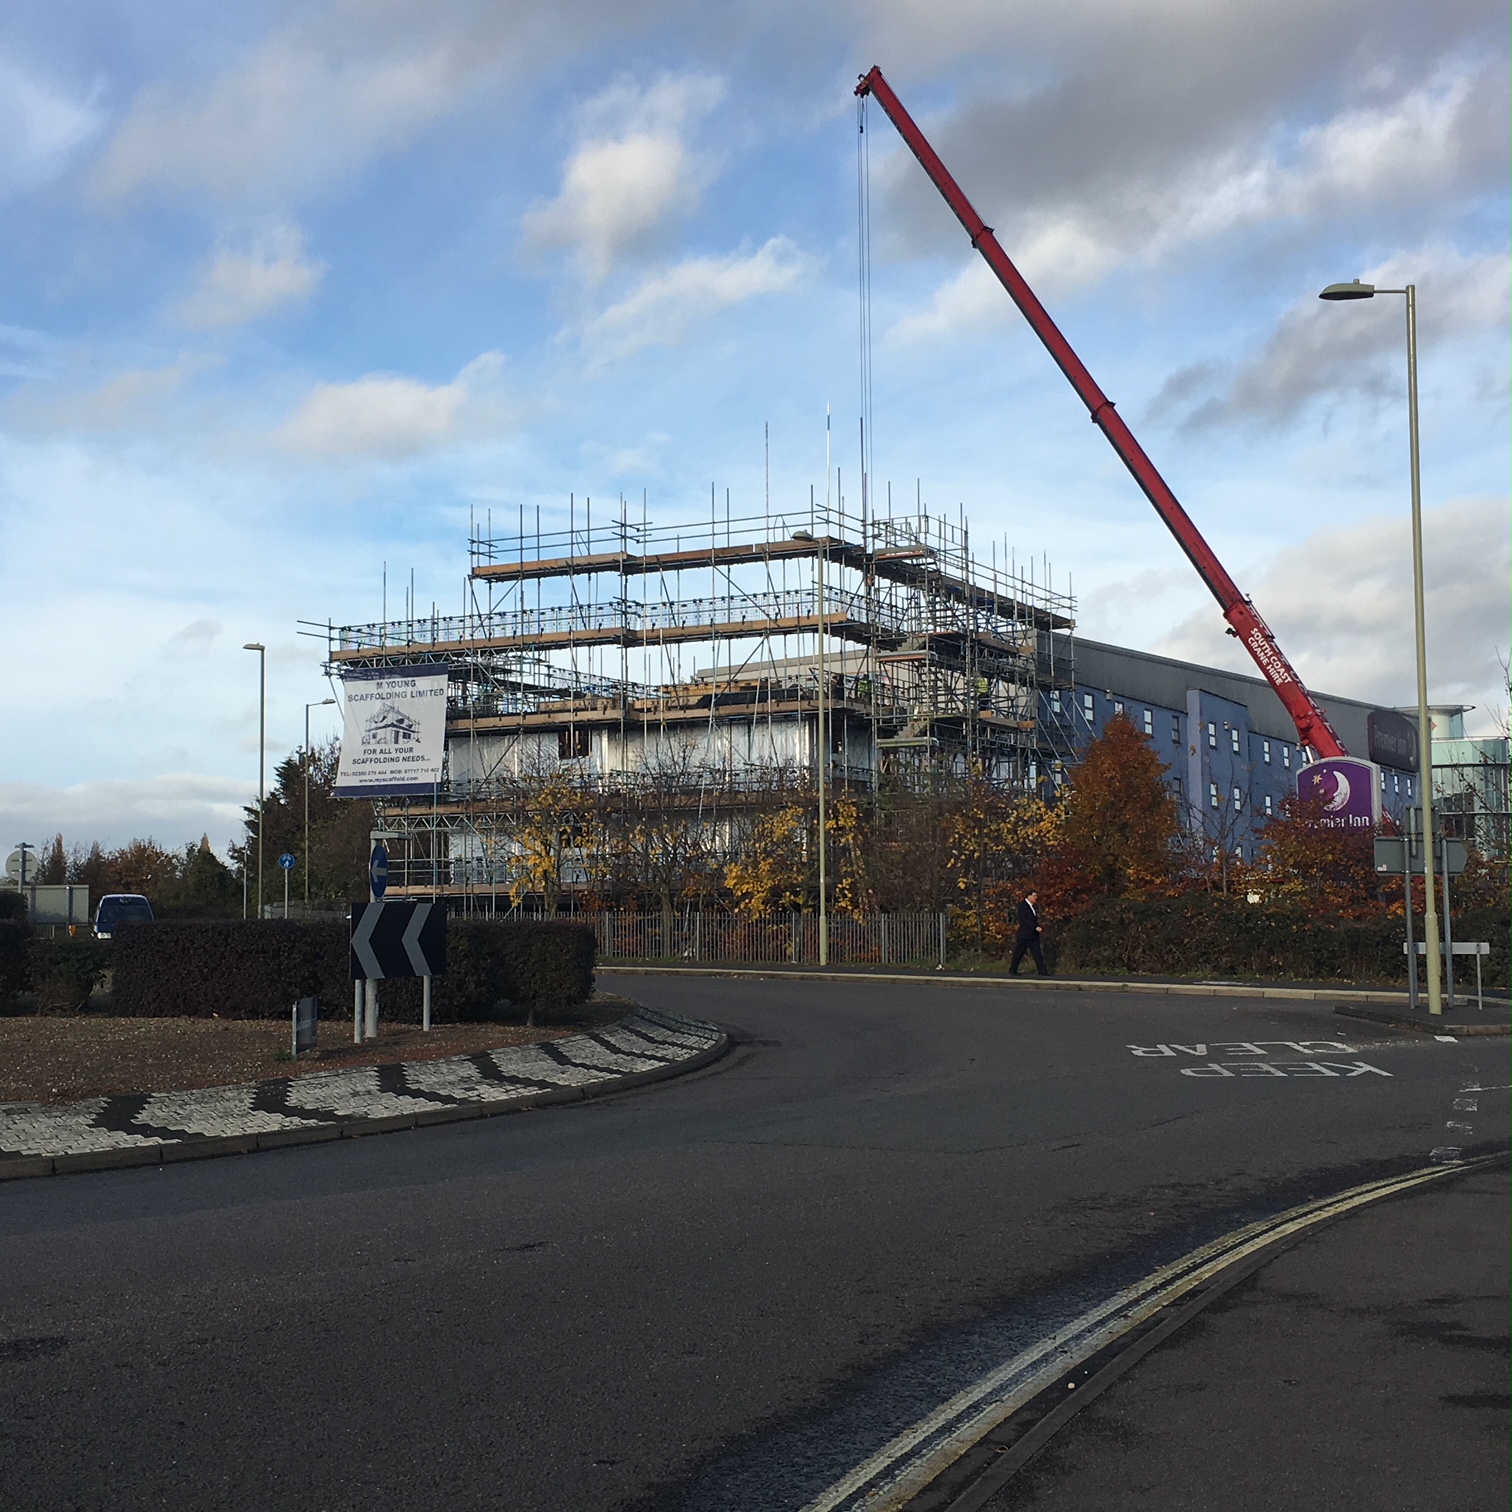 Premier-inn-scaffolding-Southampton-2